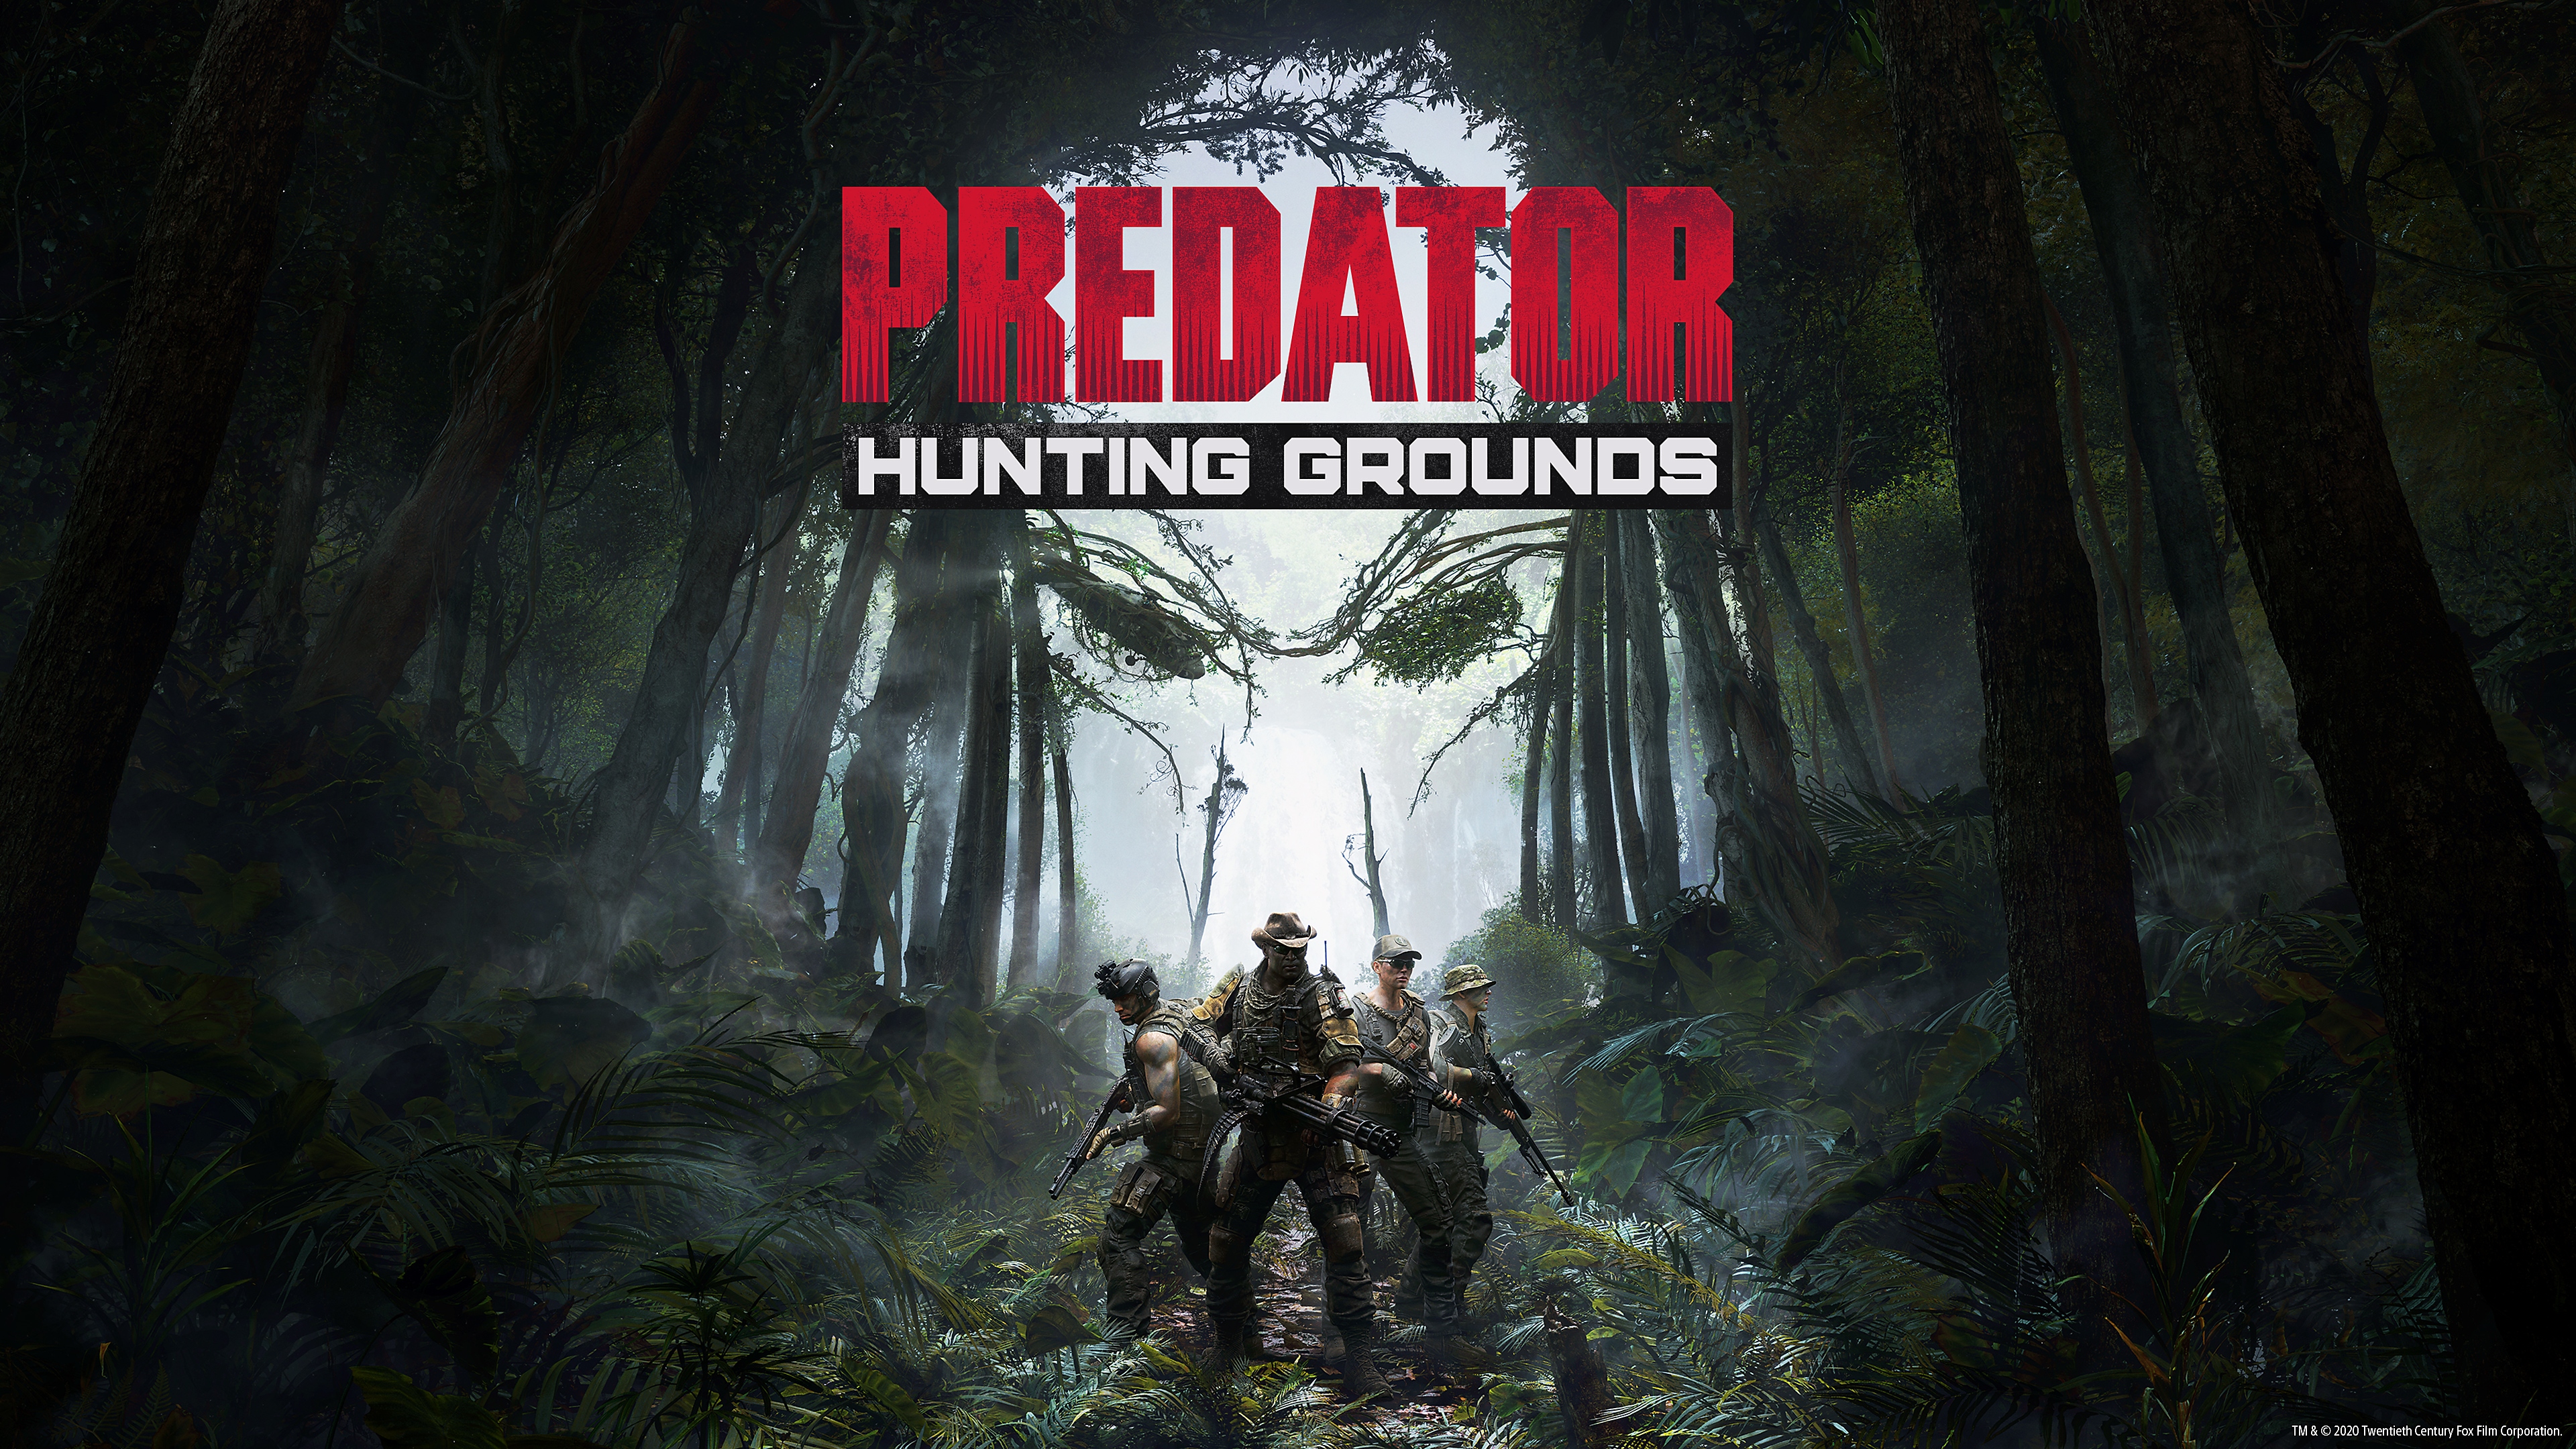 Predator: Hunting Grounds - equipe de soldados de pé em uma clareira na floresta diante de árvores que formam a silhueta do Predador